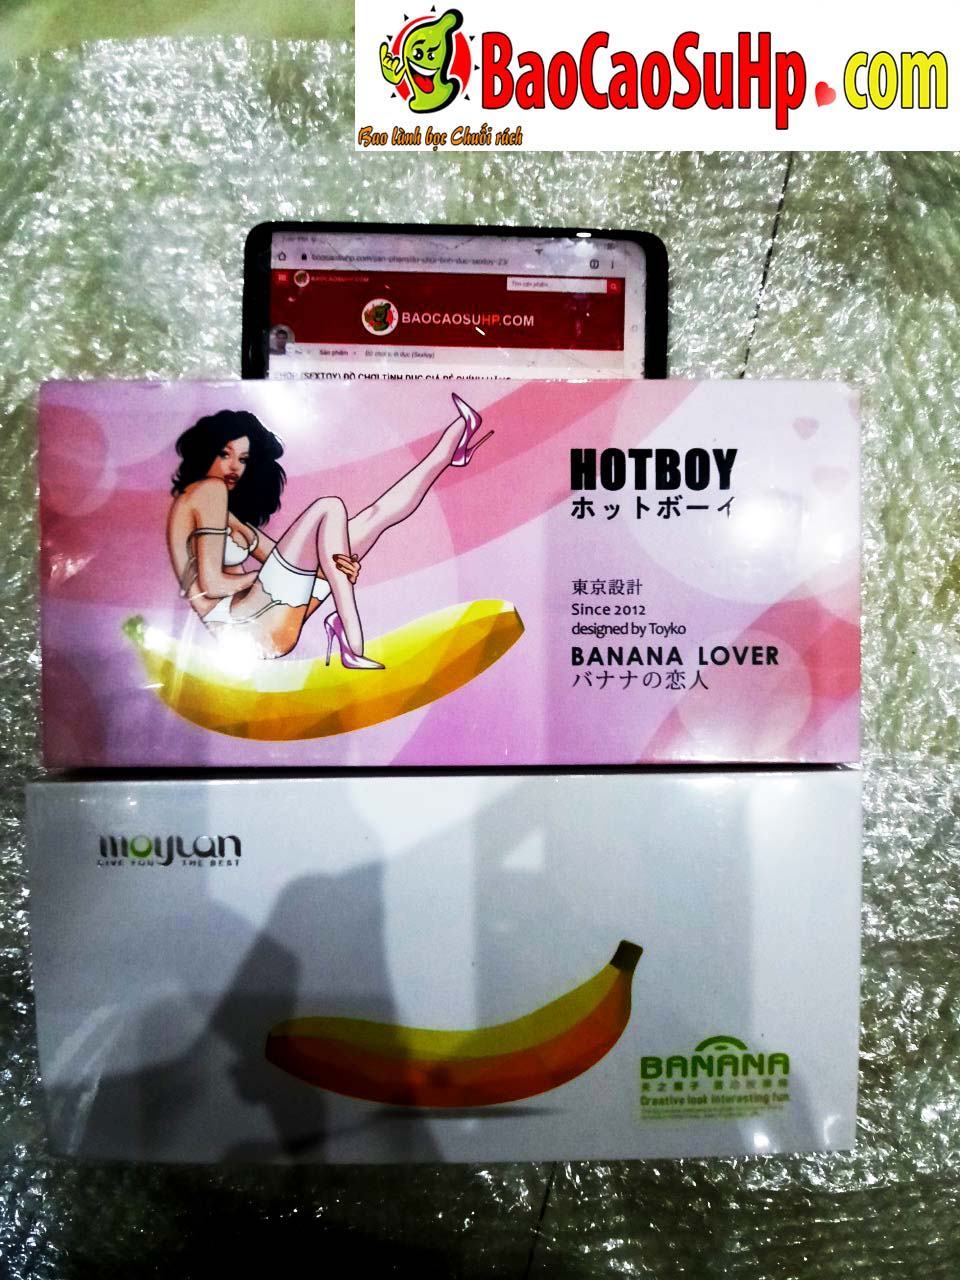 20200311101119 8007777 duong vat gia chuoi banana hotboy - 28 câu hỏi liên quan về cách quan hệ tình dục lần đầu tiên